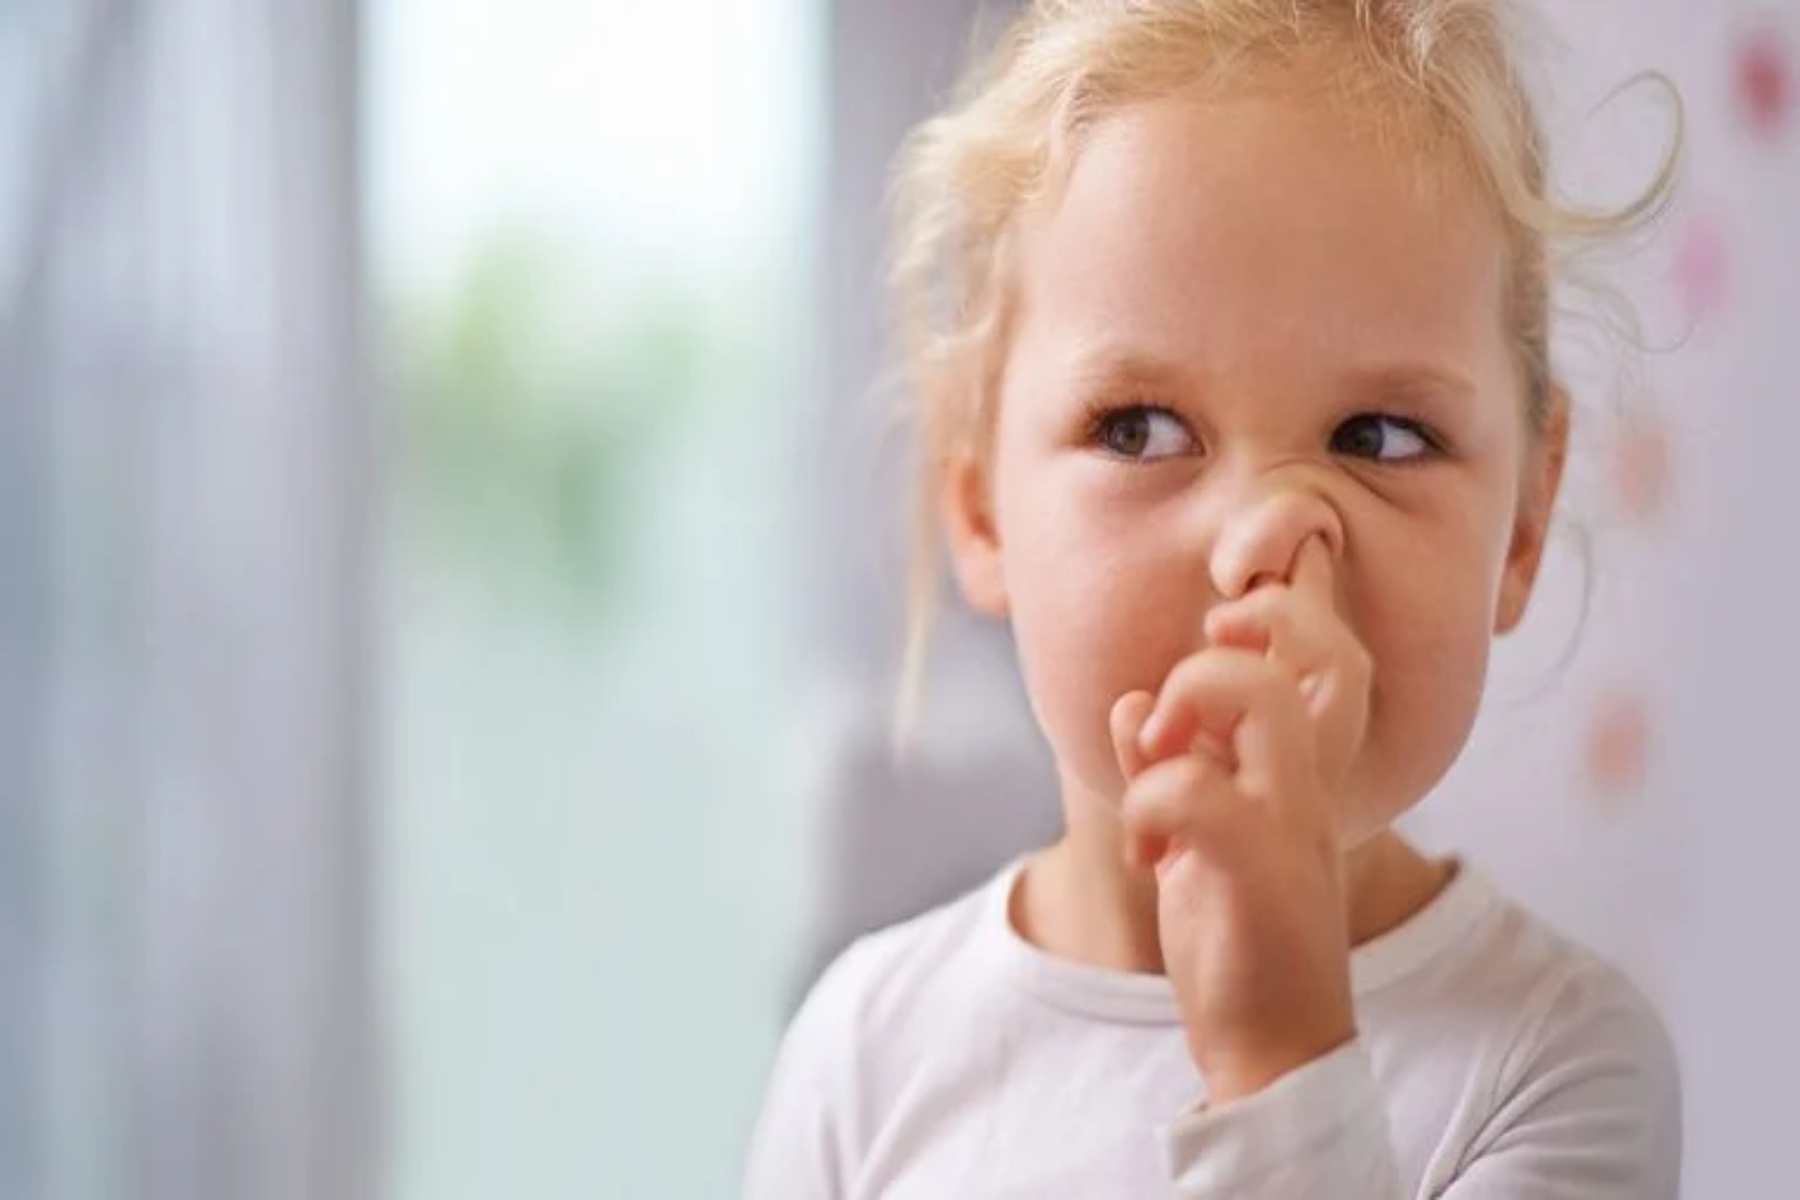 Βουλωμένη μύτη: Πώς μπορούμε να βοηθήσουμε όταν το παιδί μας έχει βουλωμένη μύτη;